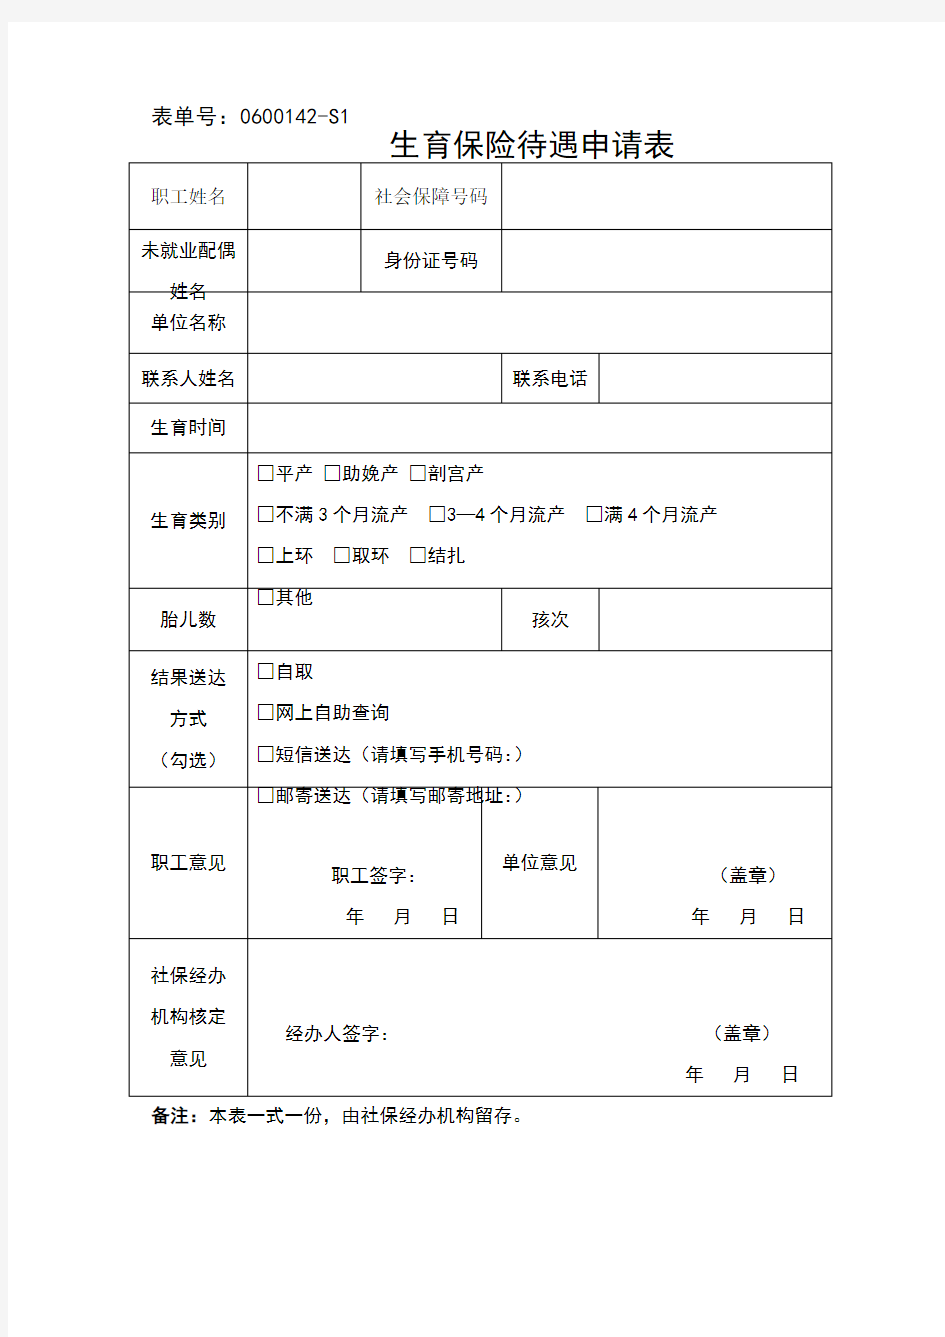 宁波市生育保险待遇申请表(2018)